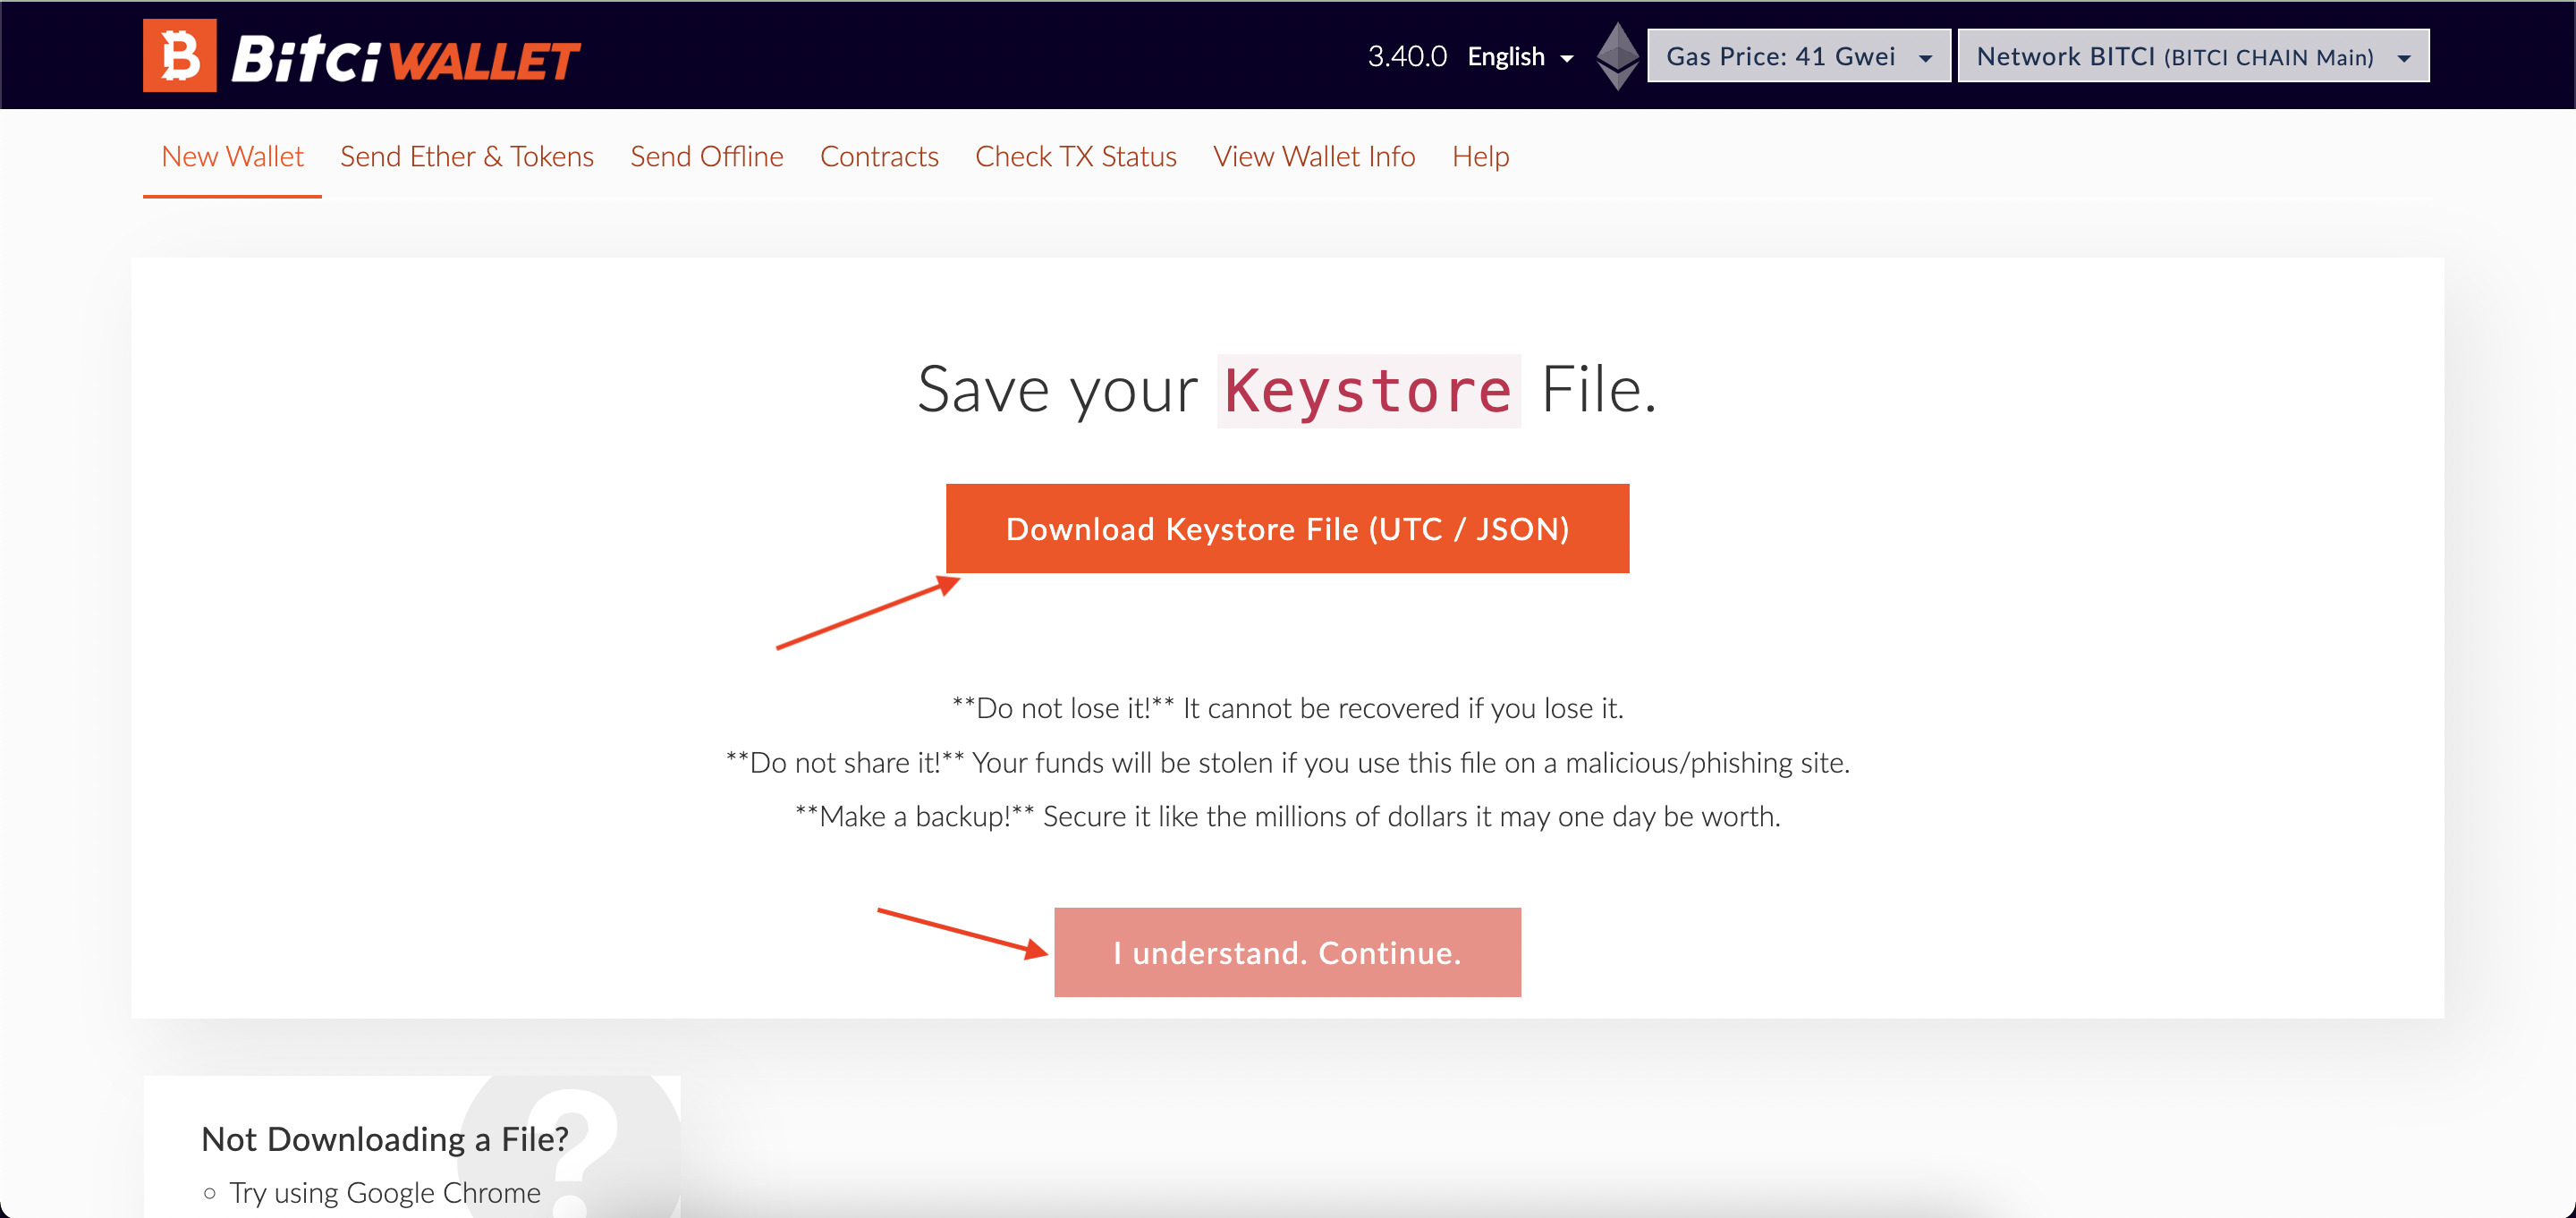 Chọn Download Keystore File (UTC / JSON), sau đó chọn 